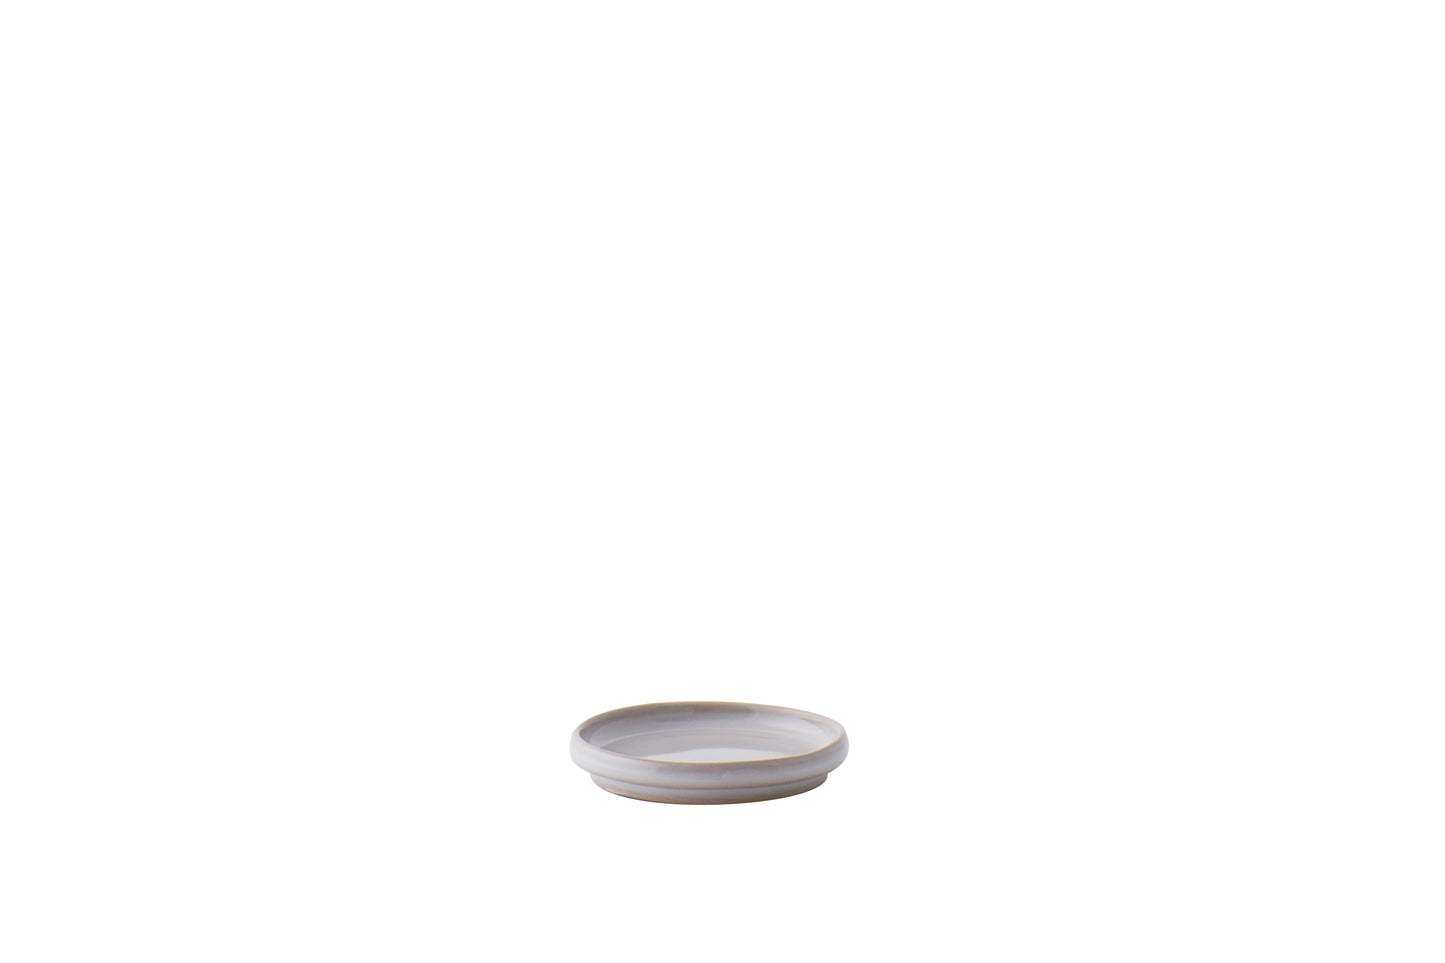 coupelle/couvercle en grès diamètre 6 cm — couleur naturel — stoneware small dish/lid — natural color — ¿adónde?